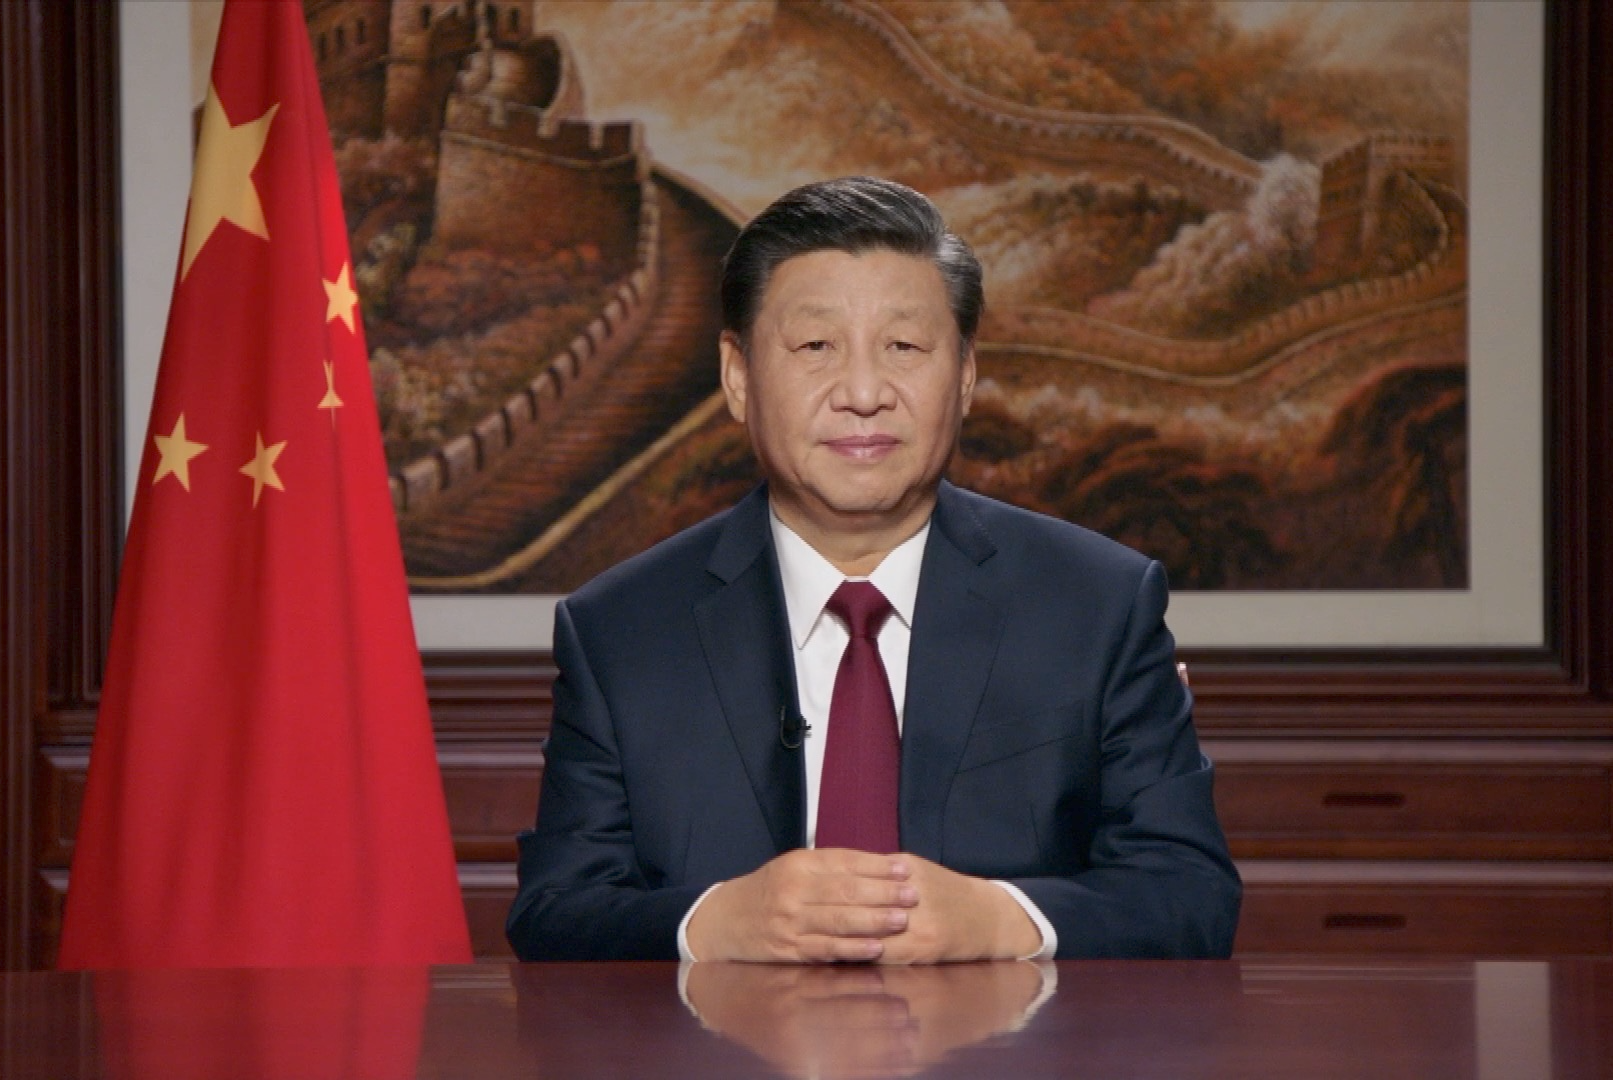 Xi Jinping 2021 Blank Meme Template